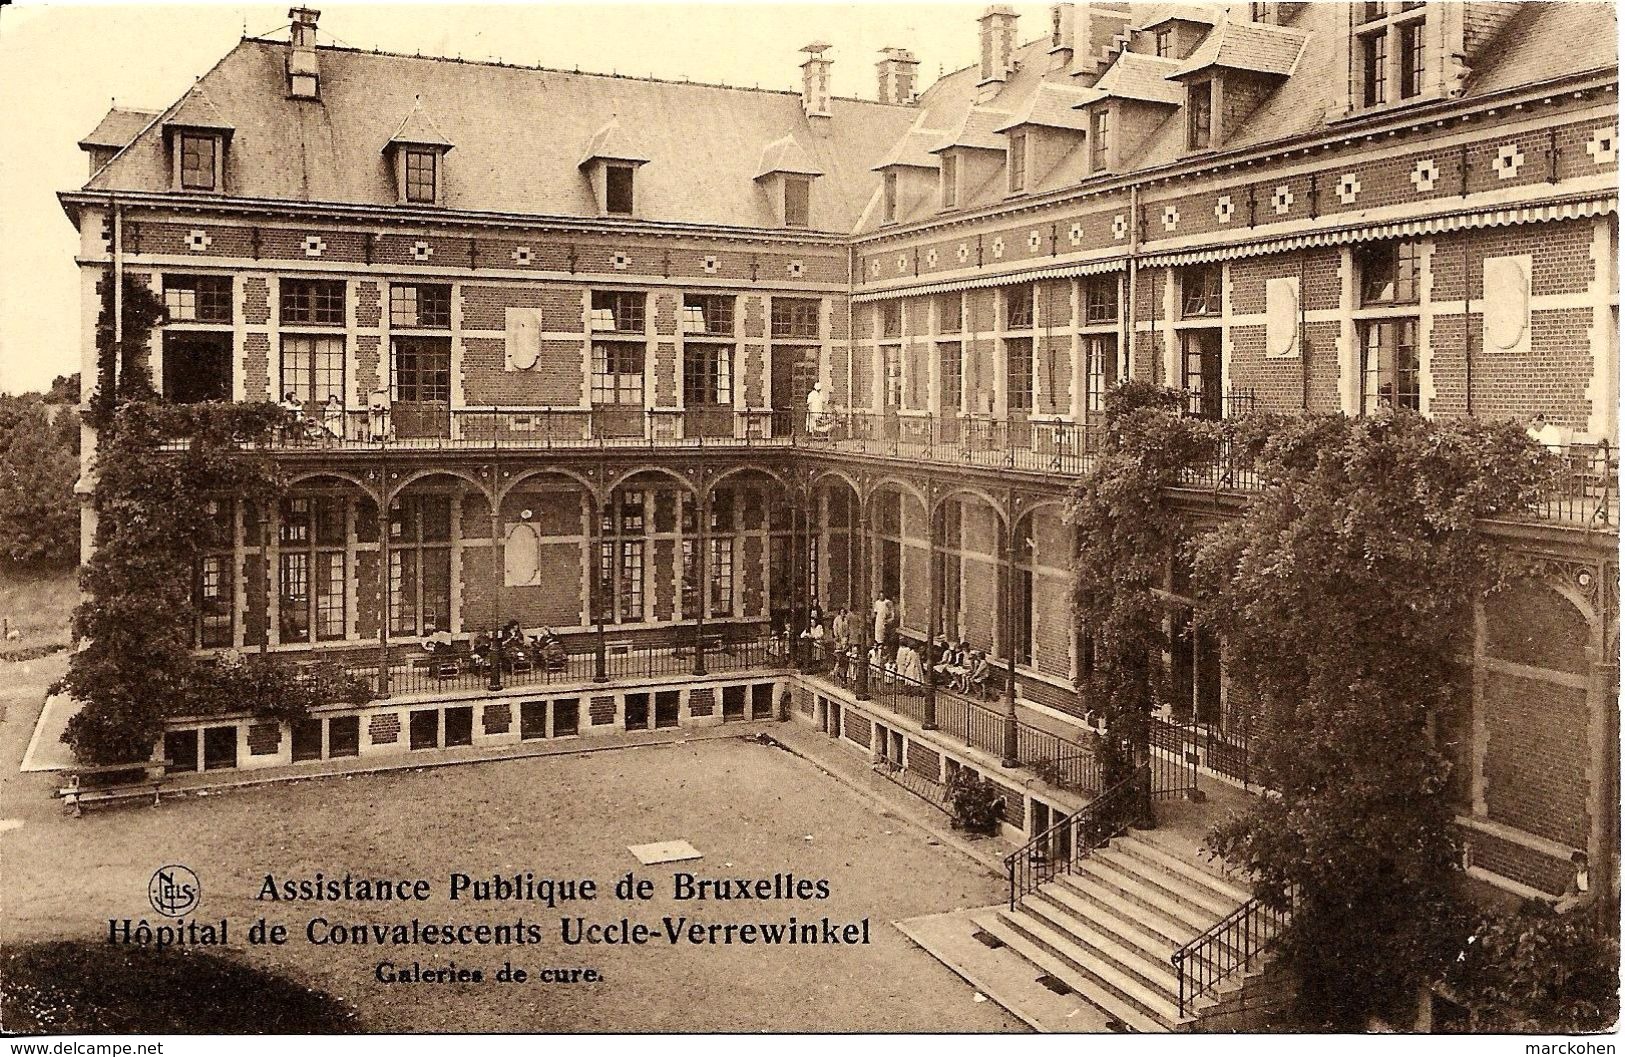 BRUXELLES (1180) : Galeries De Cure De L'Hôpital De Convalescents De L'Assistance Publique De Bruxelles, à Verrewinkel. - Santé, Hôpitaux